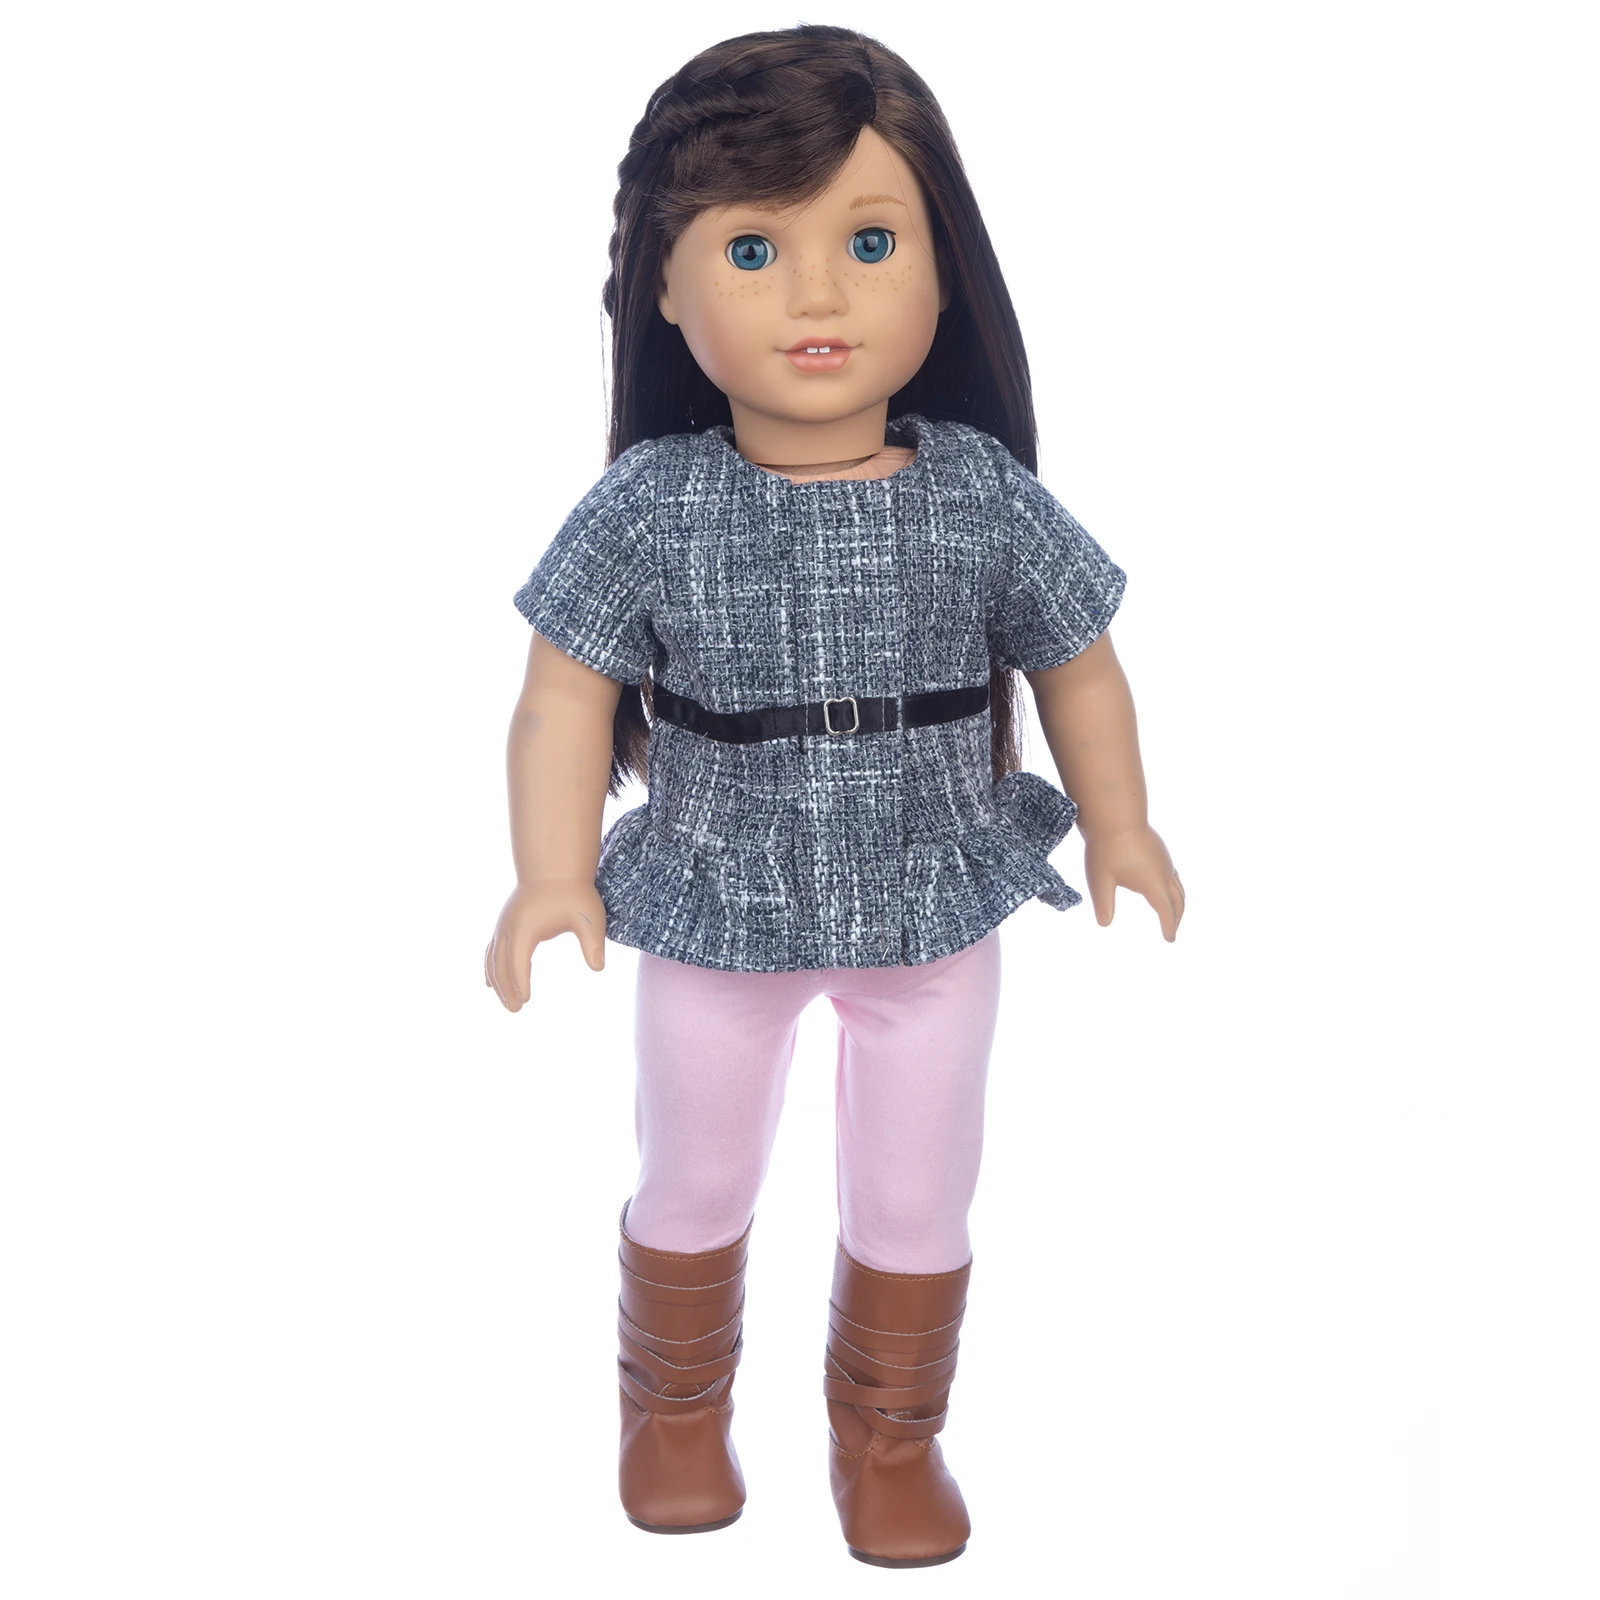 2021 Új Baba Újszülött Amerikai Barbie Baba Kiegészítők Lány Fekete-Szürke Gyapjú Ruhát A Babának Születésnapi Ajándék